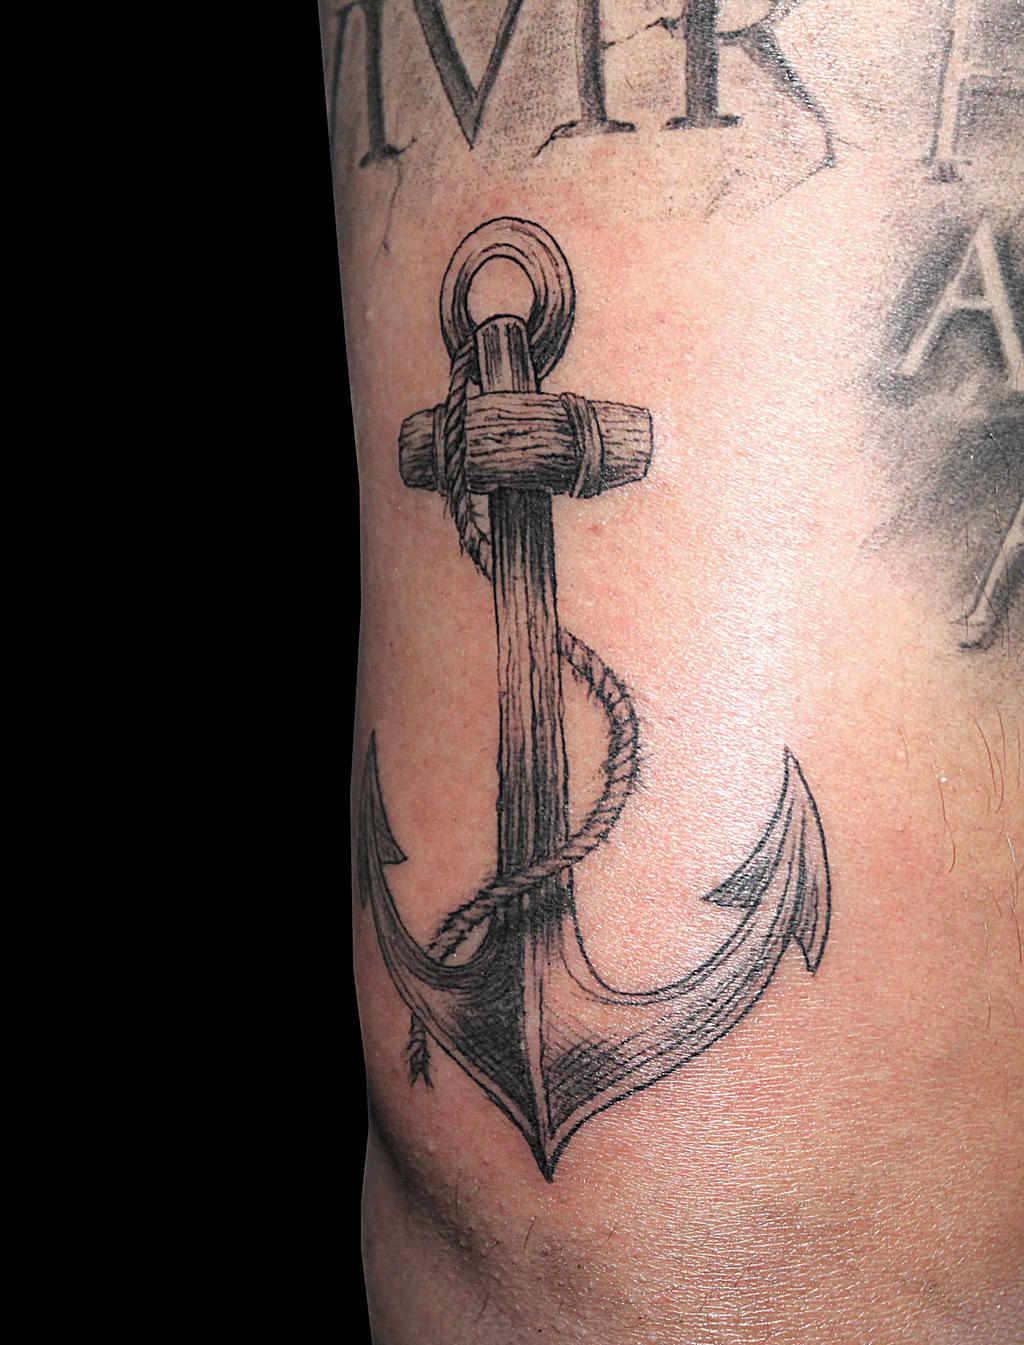 ancla tattoo by Facundo-Pereyra on DeviantArt